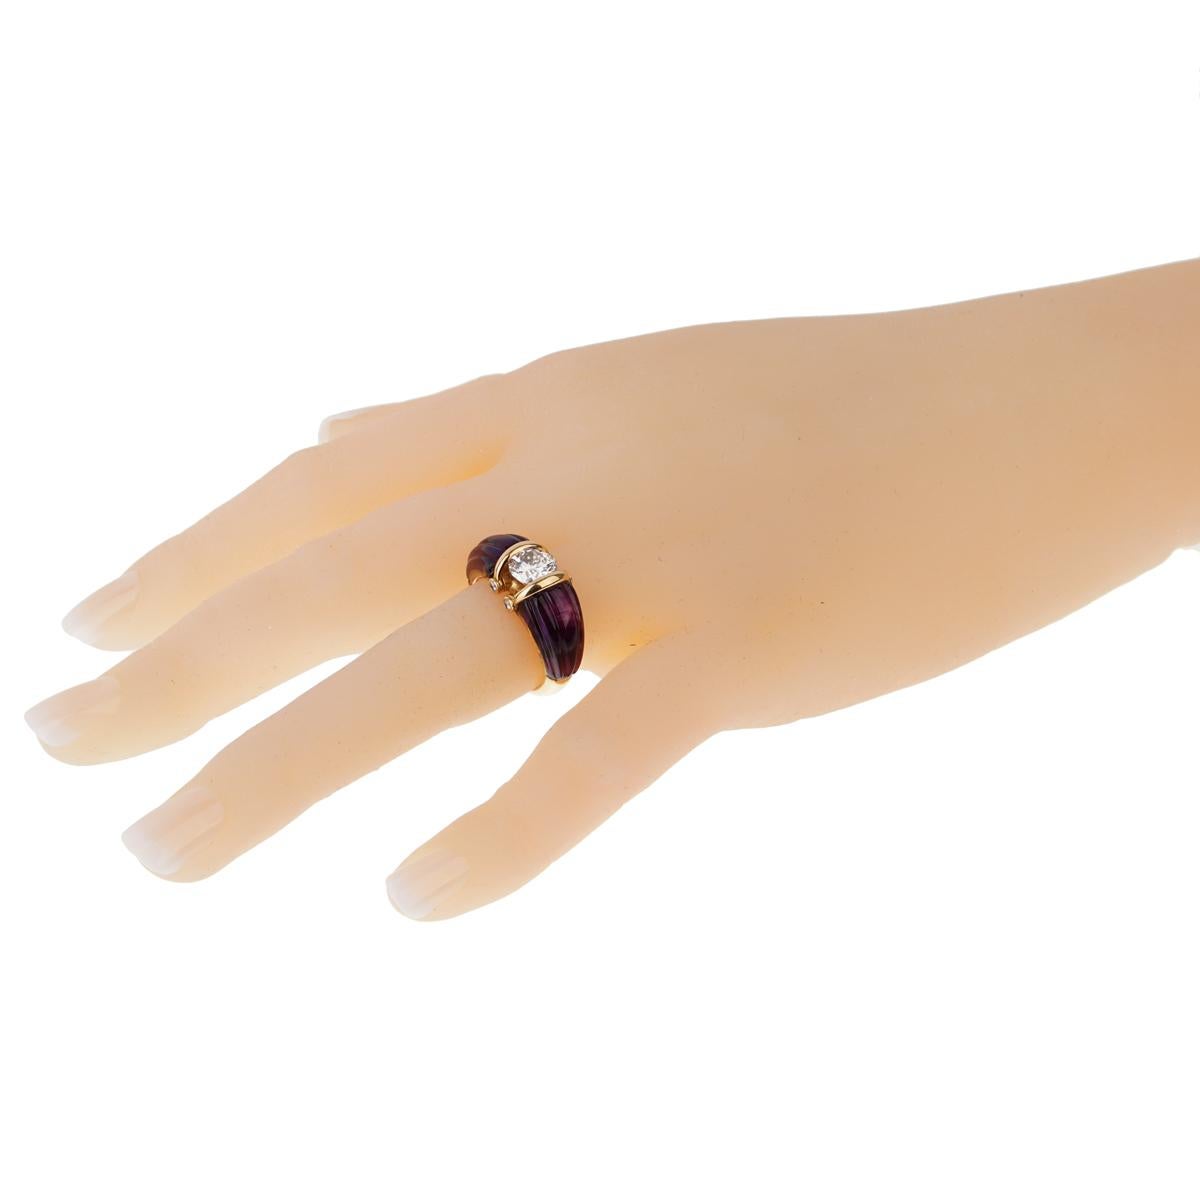 Ein fabelhafter, ultra-schicker Dior-Ring mit 2 geschnitzten Amethysten, die einen 1,14-karätigen Diamanten mit rundem Brillantschliff in 18 Karat Gelbgold in Szene setzen.

Größe 6.5
